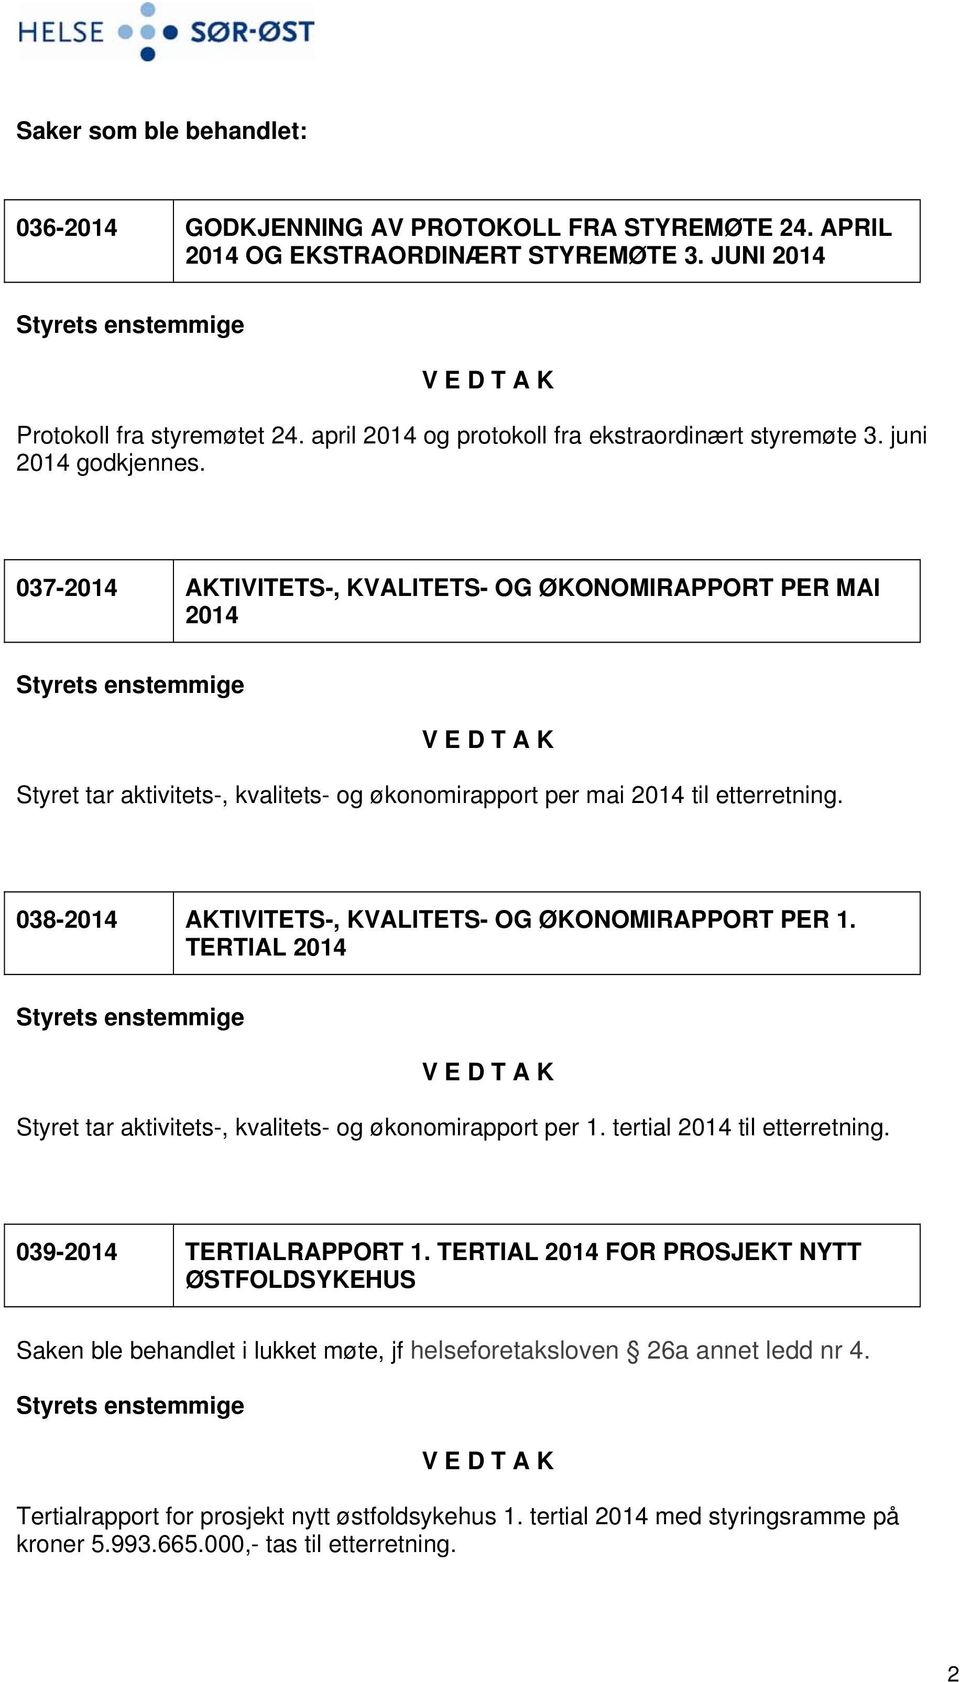 037-2014 AKTIVITETS-, KVALITETS- OG ØKONOMIRAPPORT PER MAI 2014 Styret tar aktivitets-, kvalitets- og økonomirapport per mai 2014 til etterretning.